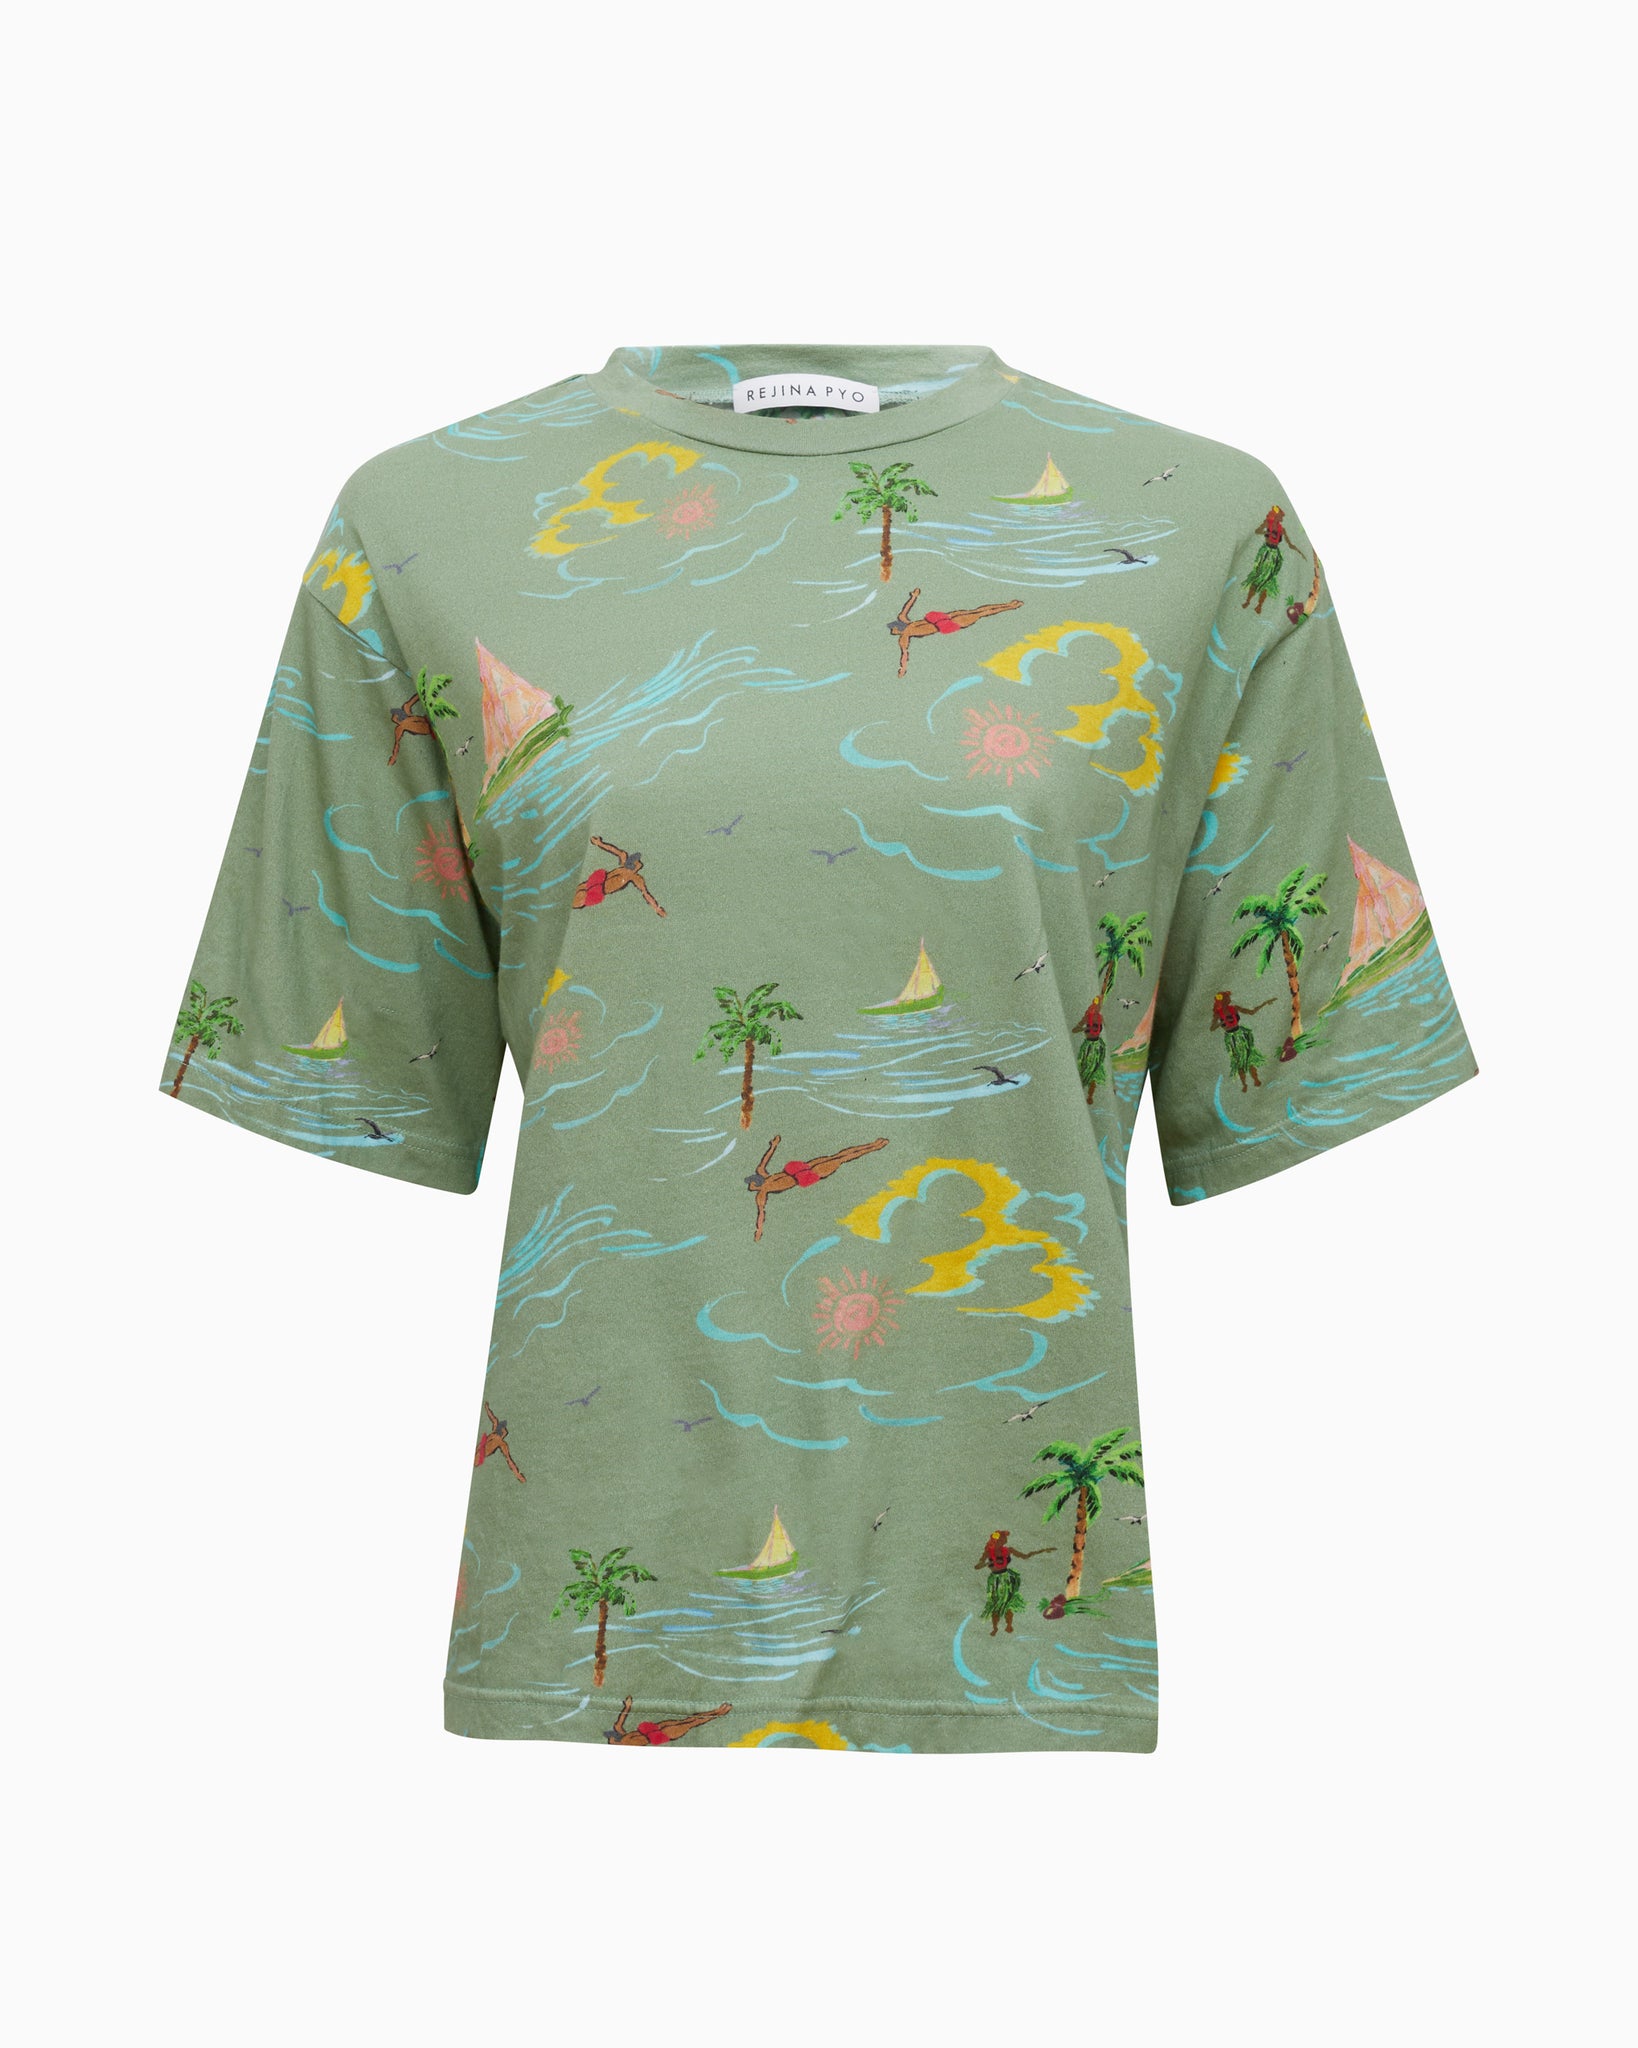 beach print shirts